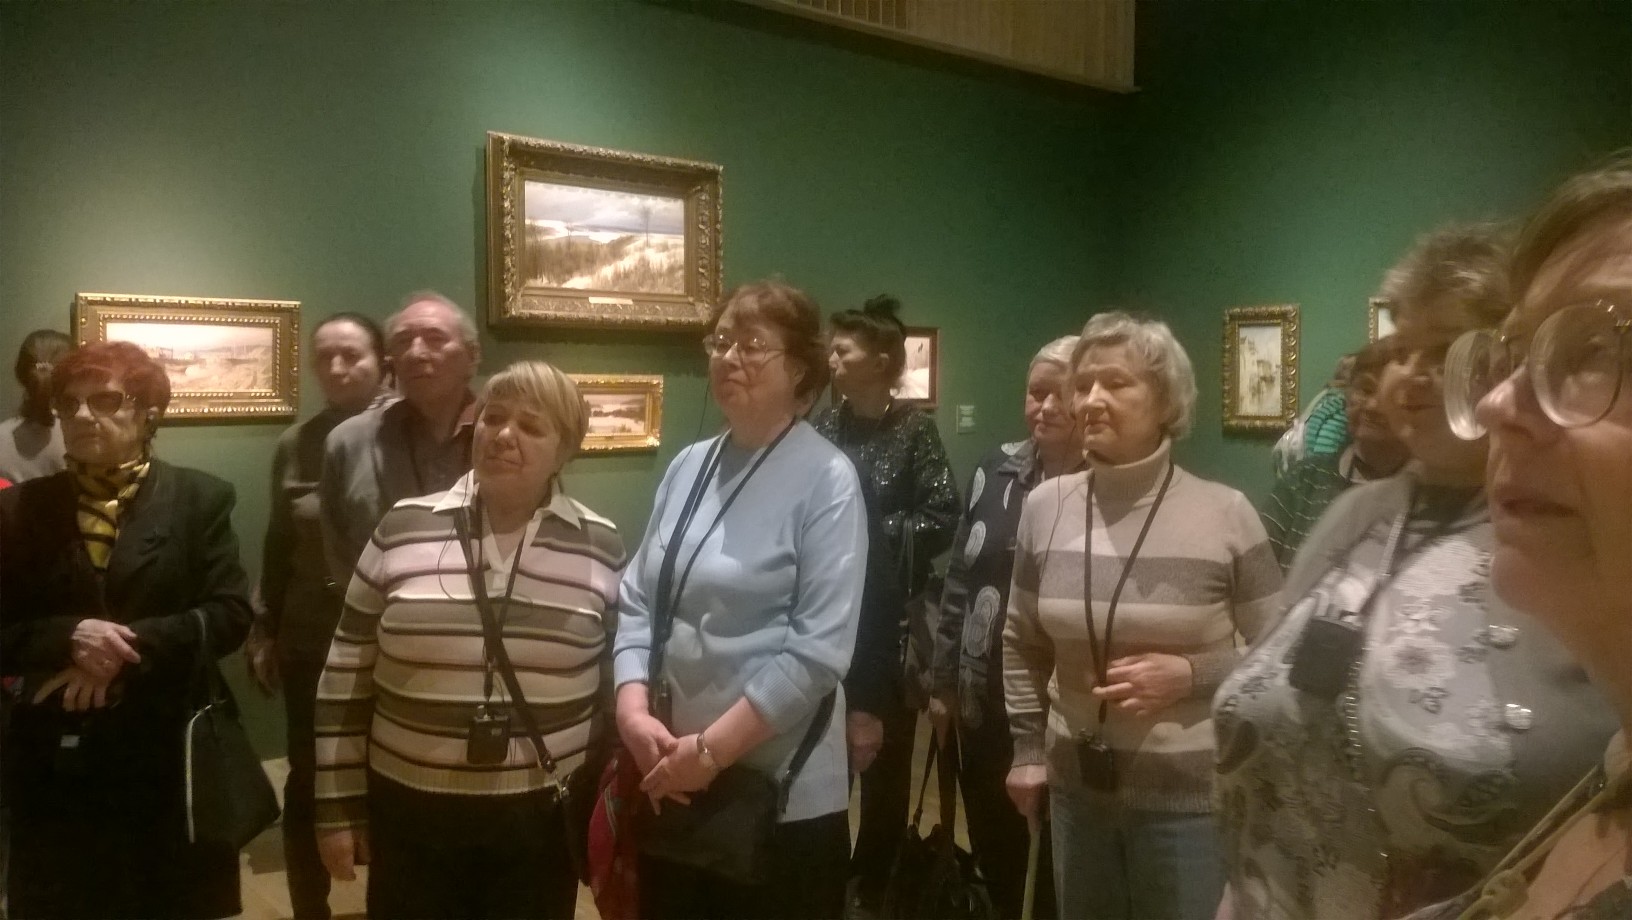 Члены МРО "Кузьминки" МГО ВОИ посетилиили выставку Поленова в Третьяковской галерее.